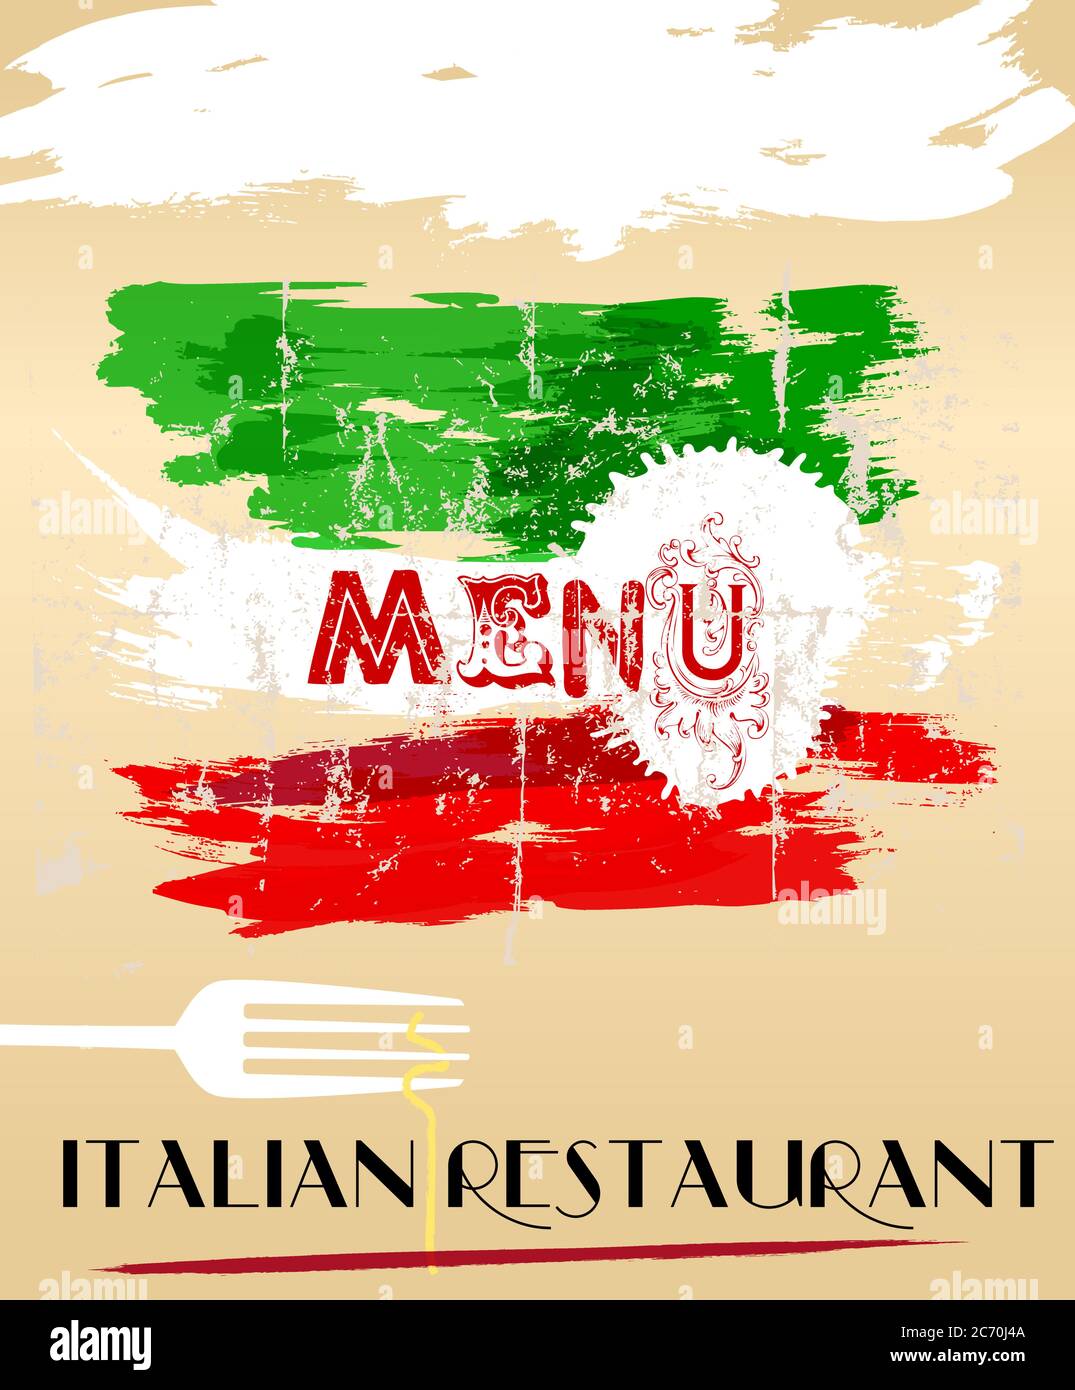 Menu pour restaurant italien, espace libre pour nom de restaurant Illustration de Vecteur